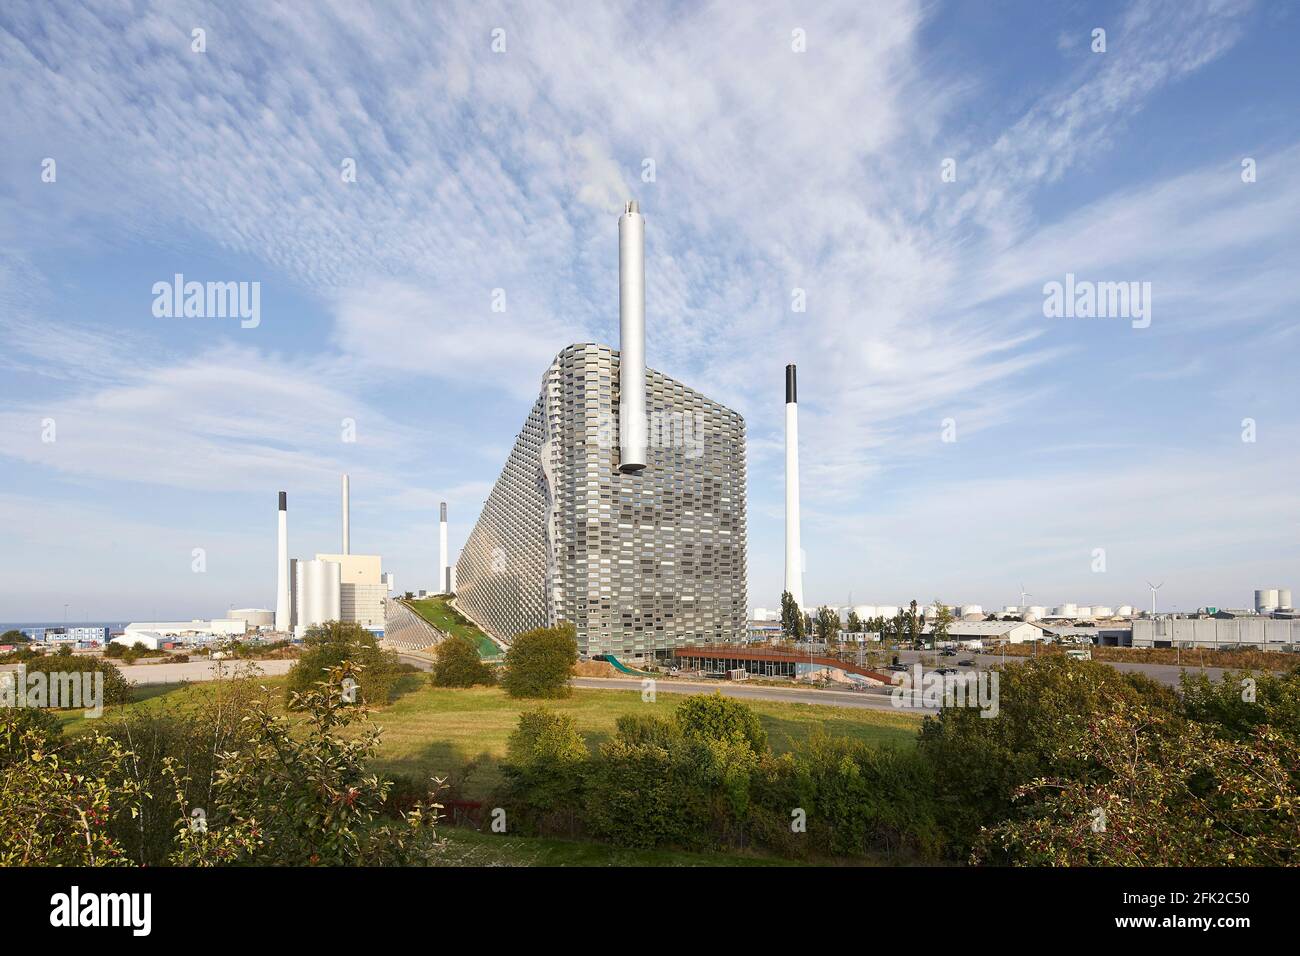 Kraftwerk mit Kontext in grün. Kraftwerk CoppenHill, Kopenhagen, Dänemark. Architekt: BIG Bjarke Ingels Group, 2019. Stockfoto